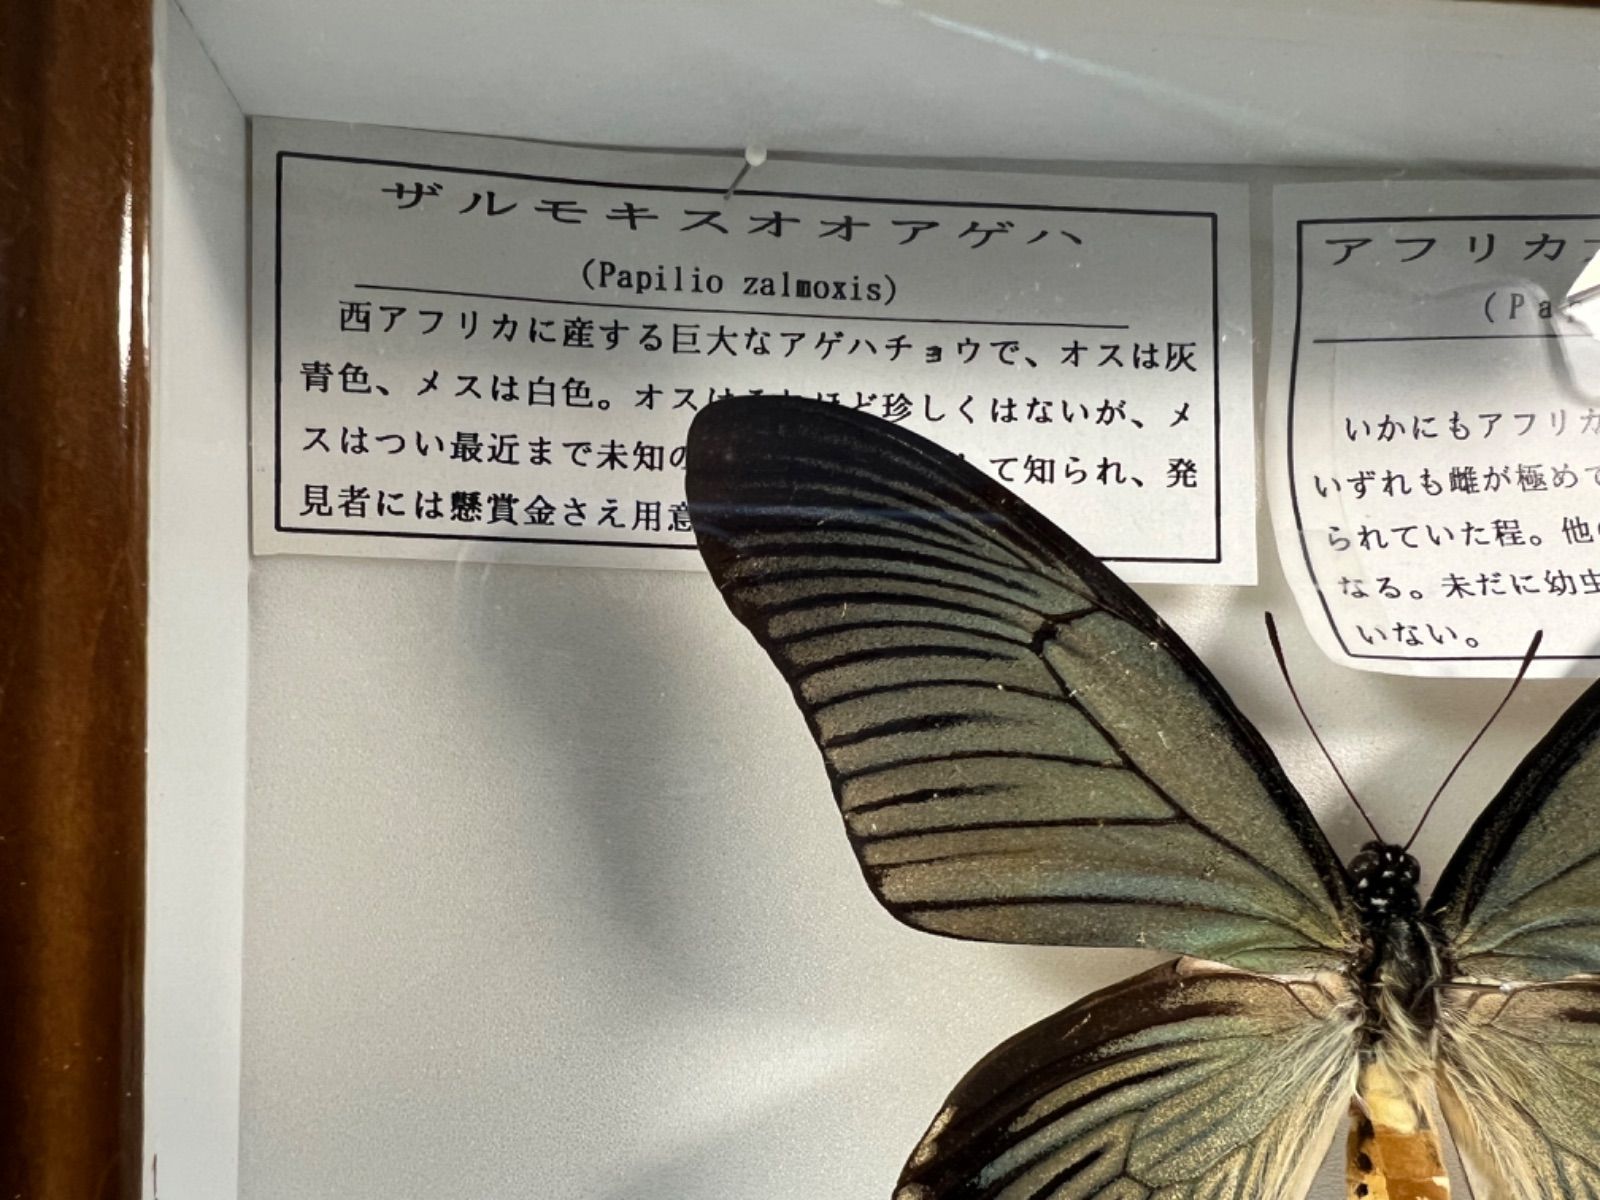 ザルモキスオオアゲハ 蝶 標本 藤本標本箱 - メルカリ